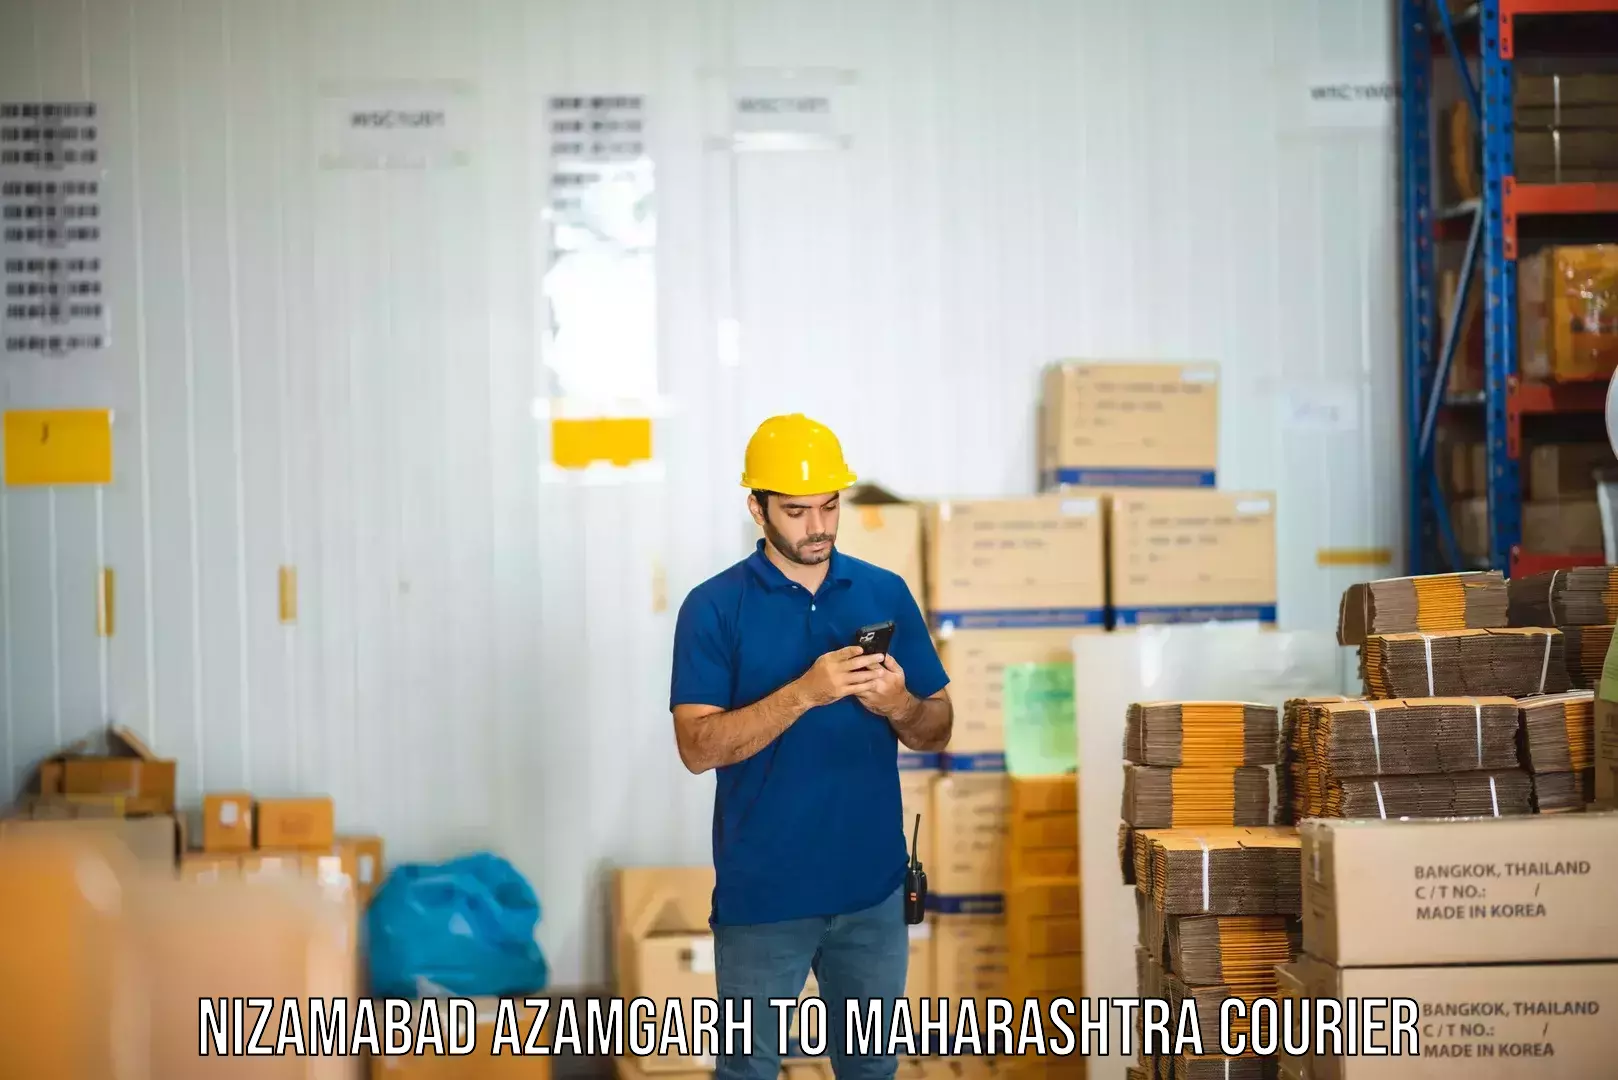 Next-generation courier services Nizamabad Azamgarh to Jalgaon